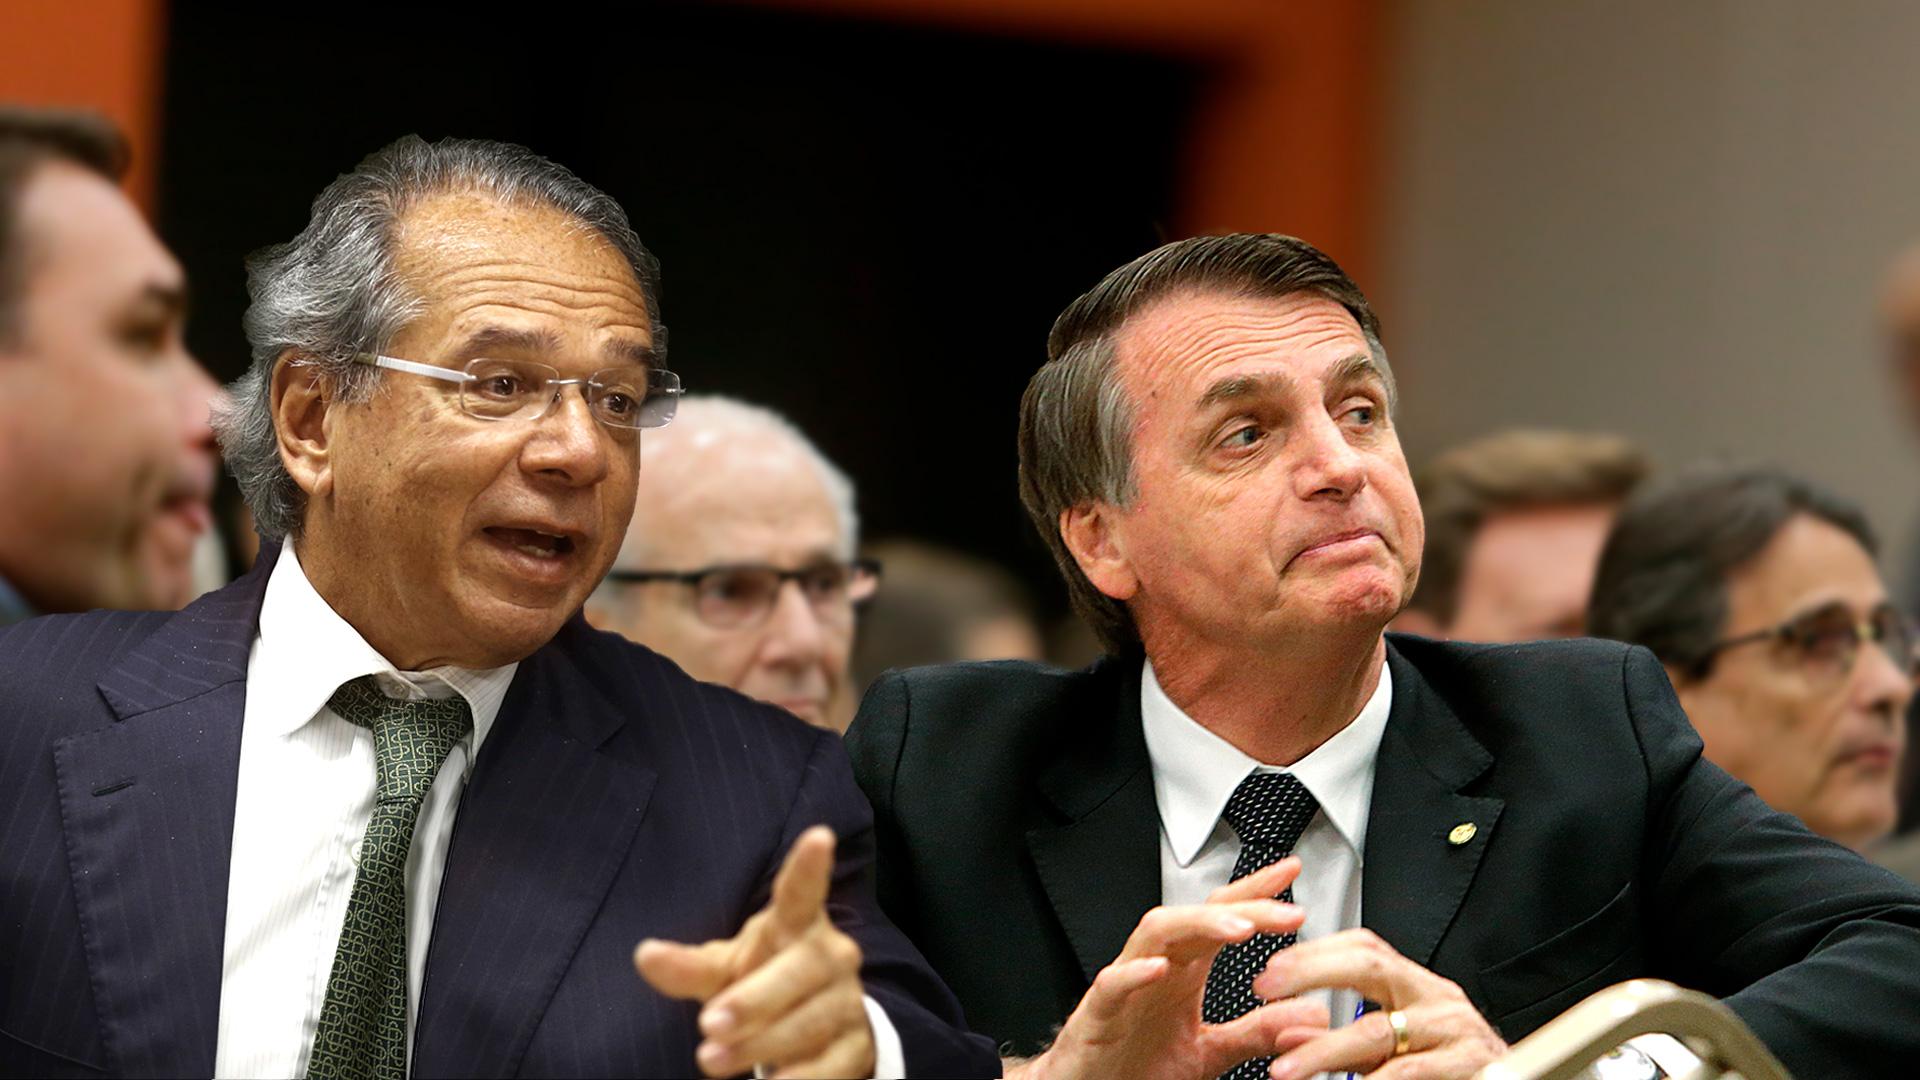 Com PEC aprovada, governo corre para pagar benefícios a tempo de Bolsonaro colher efeito eleitoral